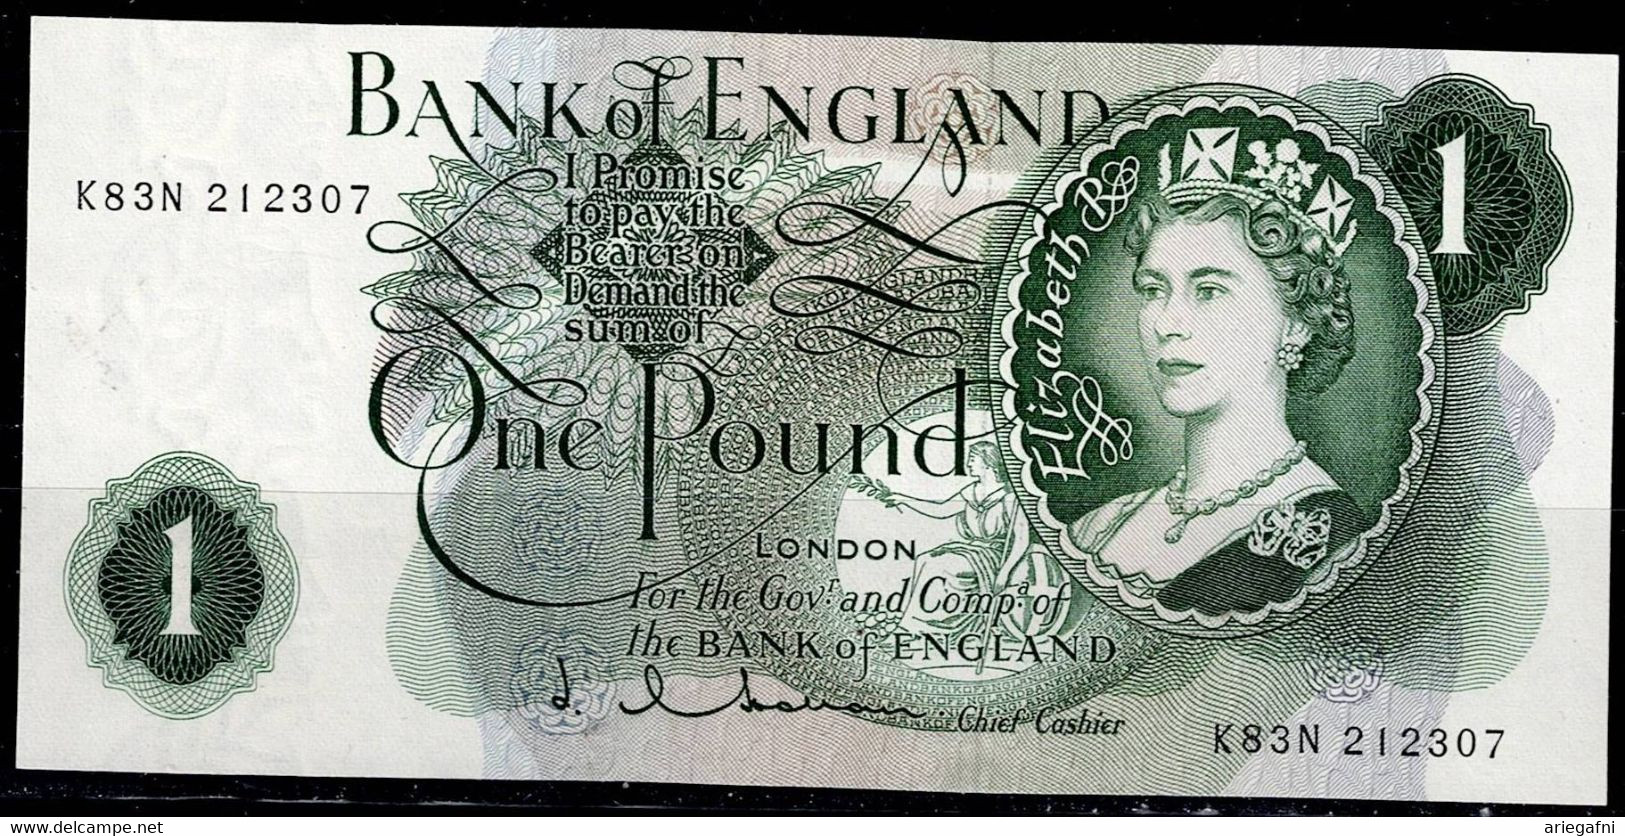 UNITED KINGDOM 1960-70 BANKNOTES ELIZABETH II 1 POUND VF!! - 1 Pound